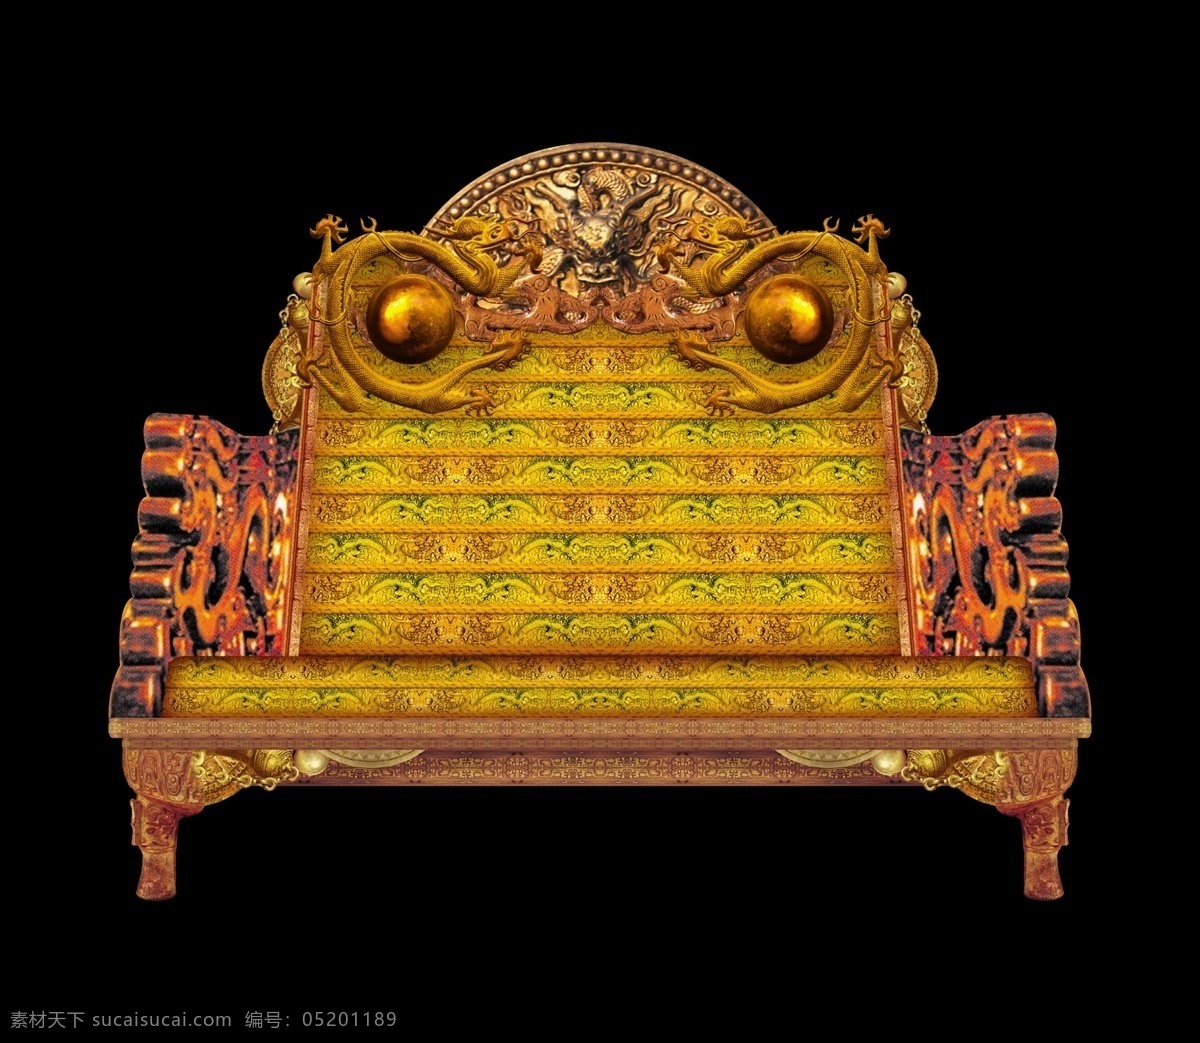 龙椅 中国 皇室 家具 古典花纹 古典图案 中国传统花纹 分层素材 海报素材图案 黑色